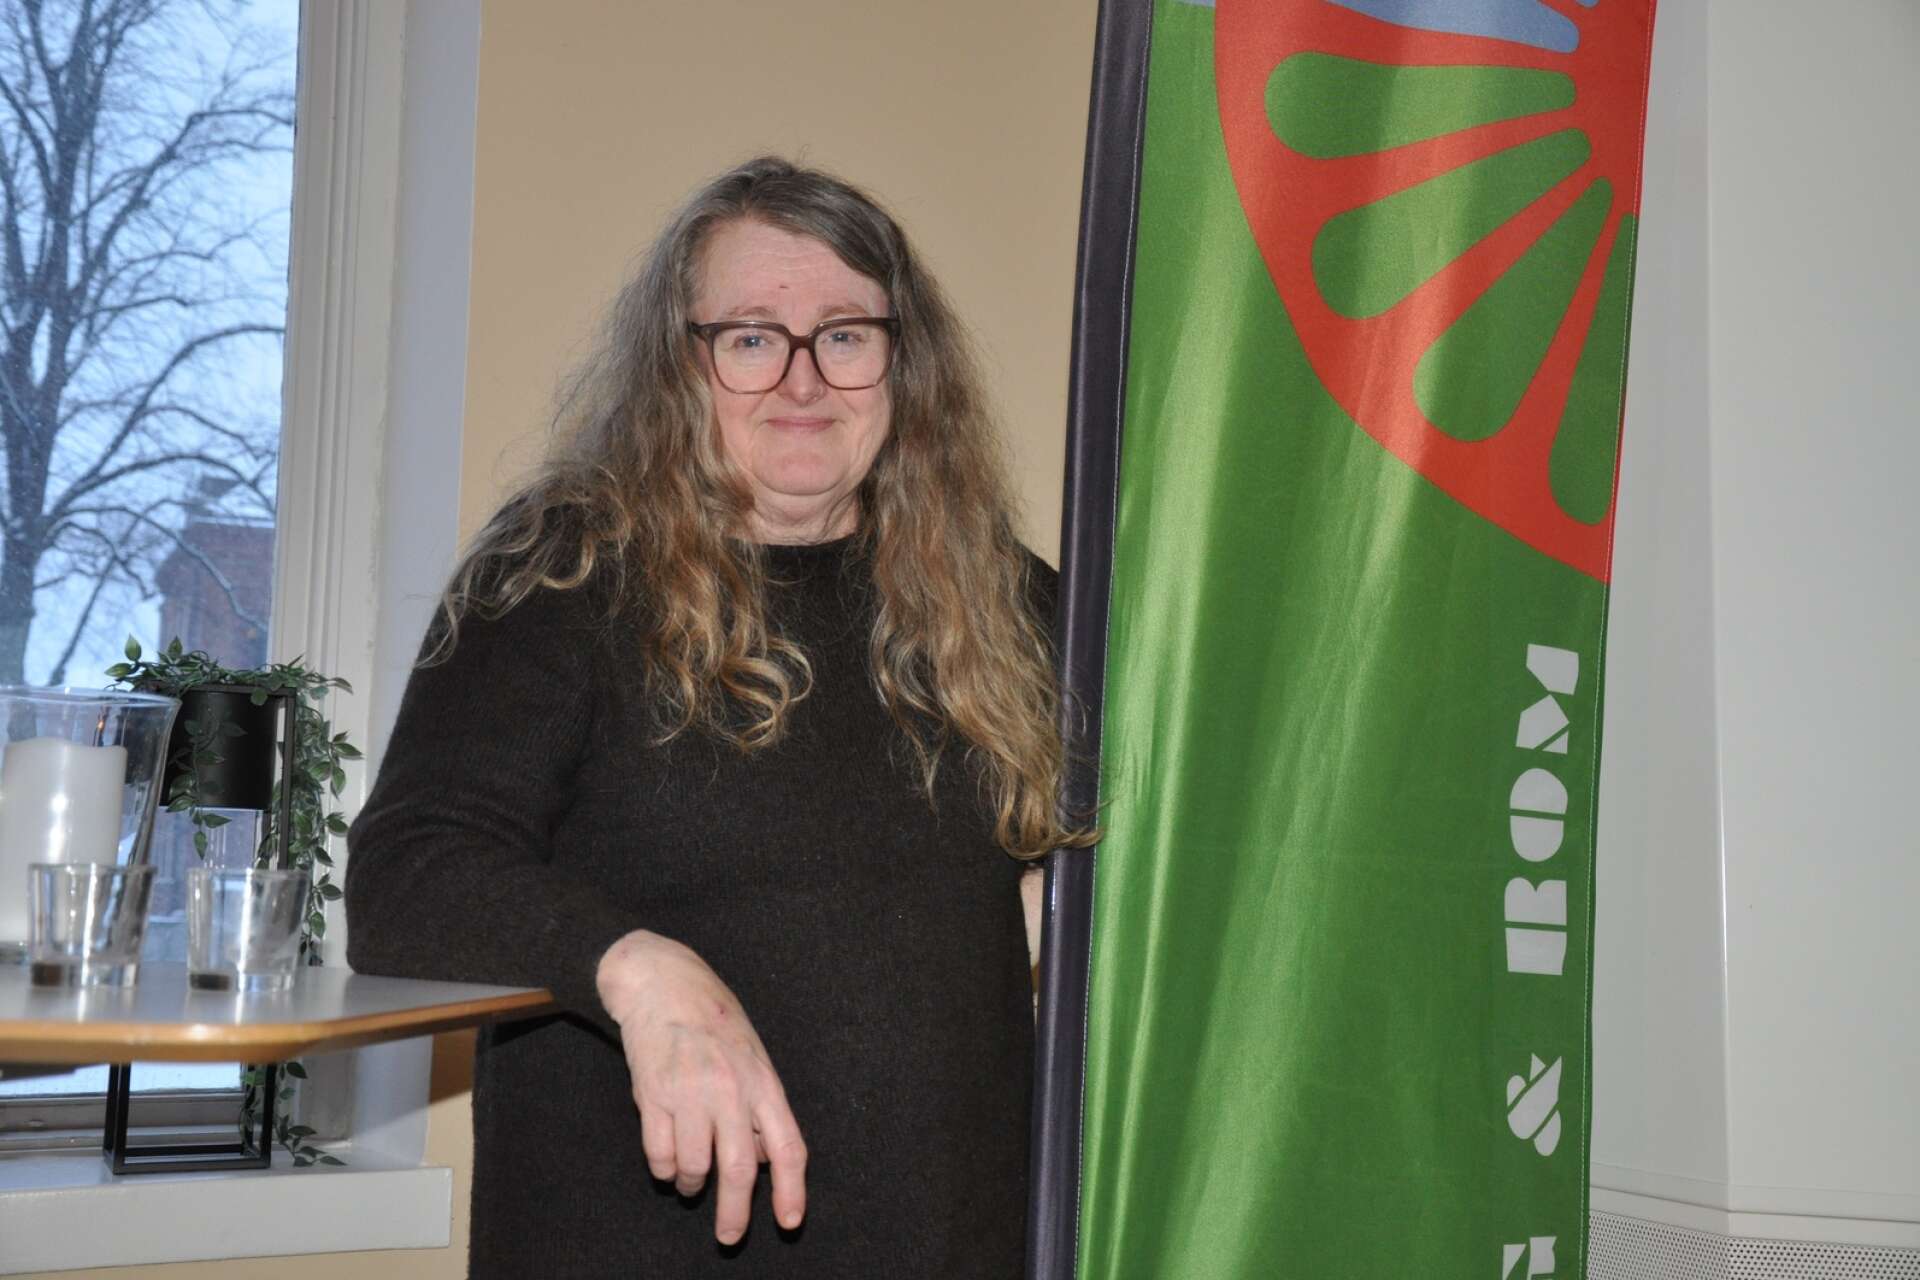 Helena Larsdotter, projektkoordinator vid Skövde kommun, leder projektet Ung och rom, som ska verka för romsk inkludering. I december händer det mycket – det blir både boksläpp och ungdomskonferens.